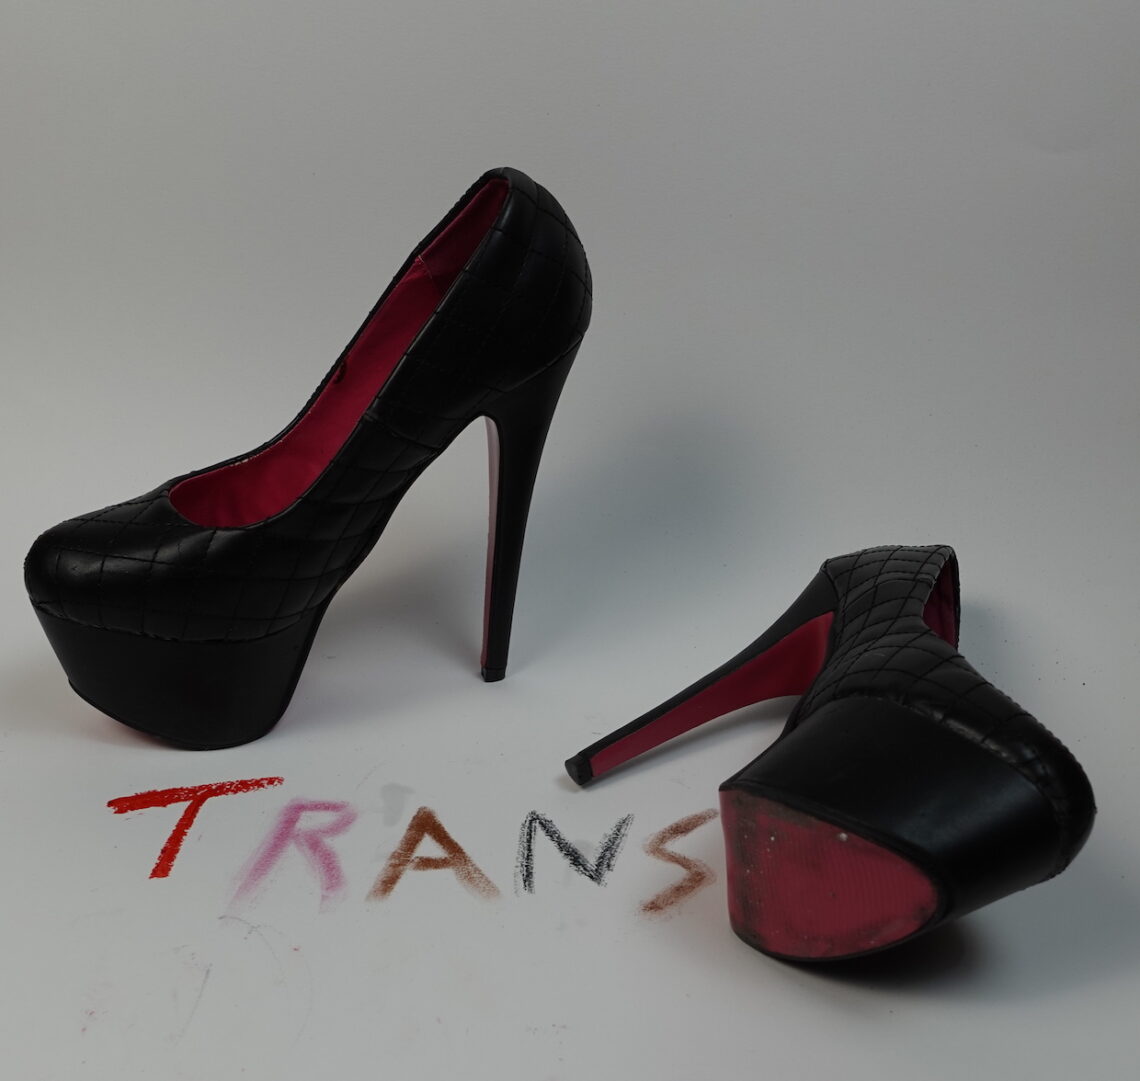 Scatti d’identità vite transgender in Mostra